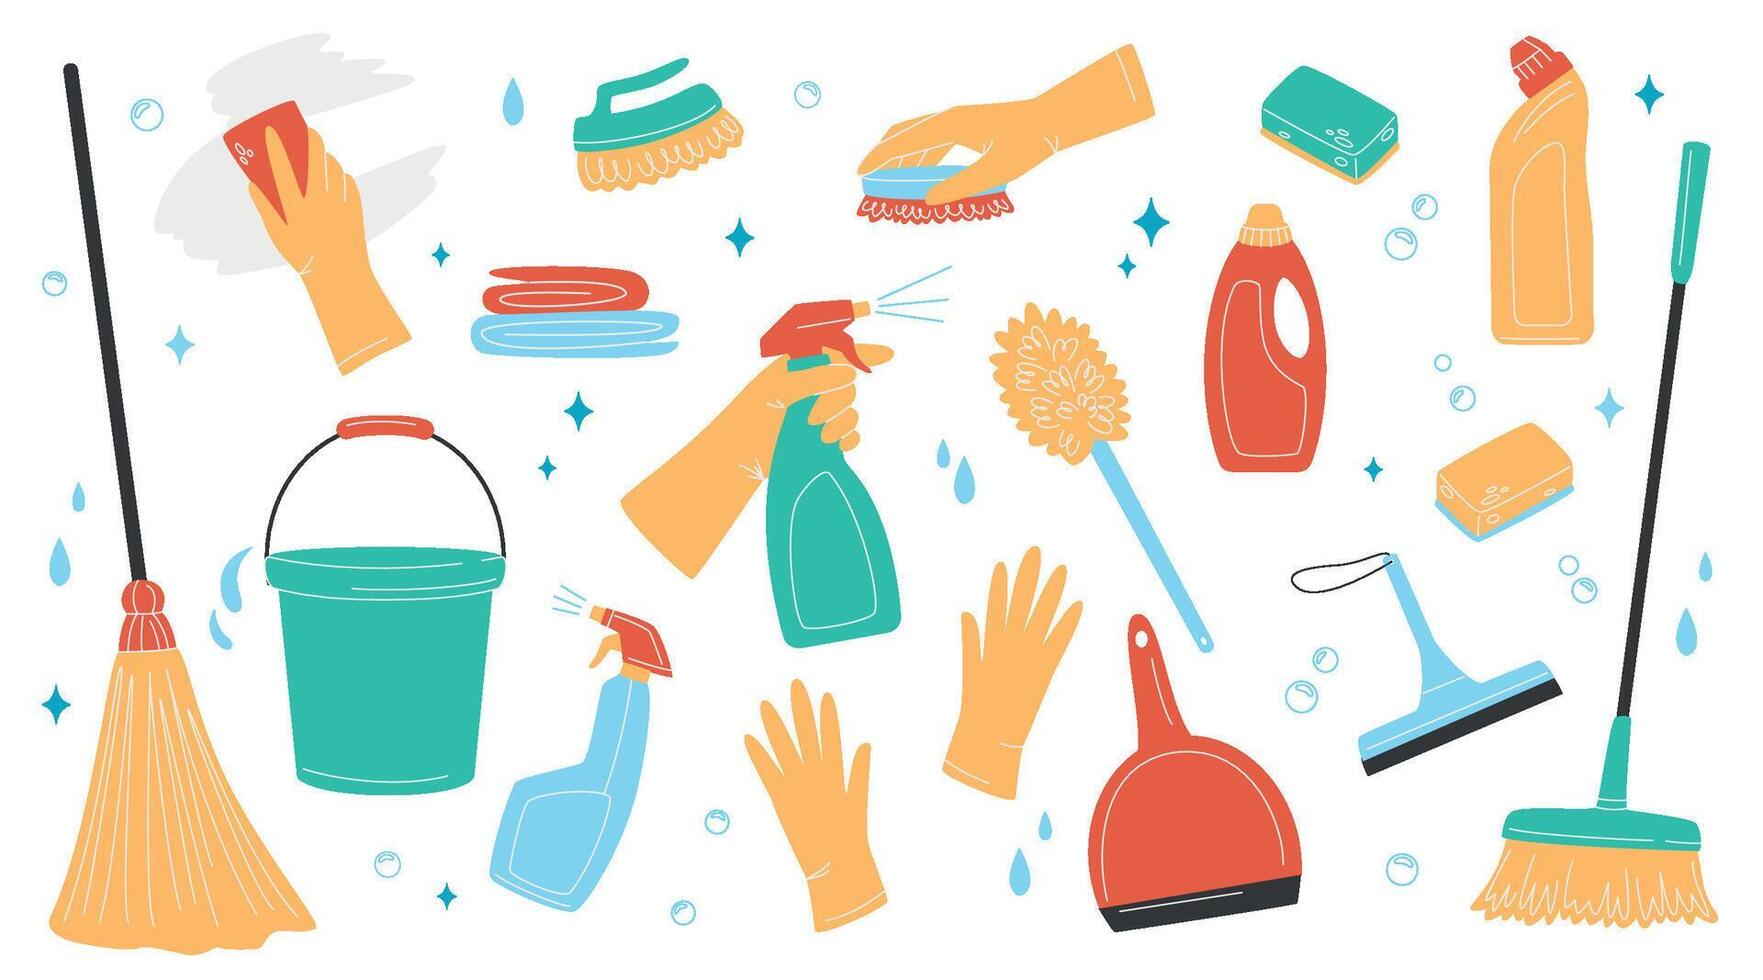 Hand gezeichnet einstellen von Reinigung Lieferungen, Flaschen, Bürste, sprühen, Schwamm, Handschuhe. Hausarbeit und Reinigung Konzept. verschiedene Reinigung Artikel. isoliert Vektor Abbildungen